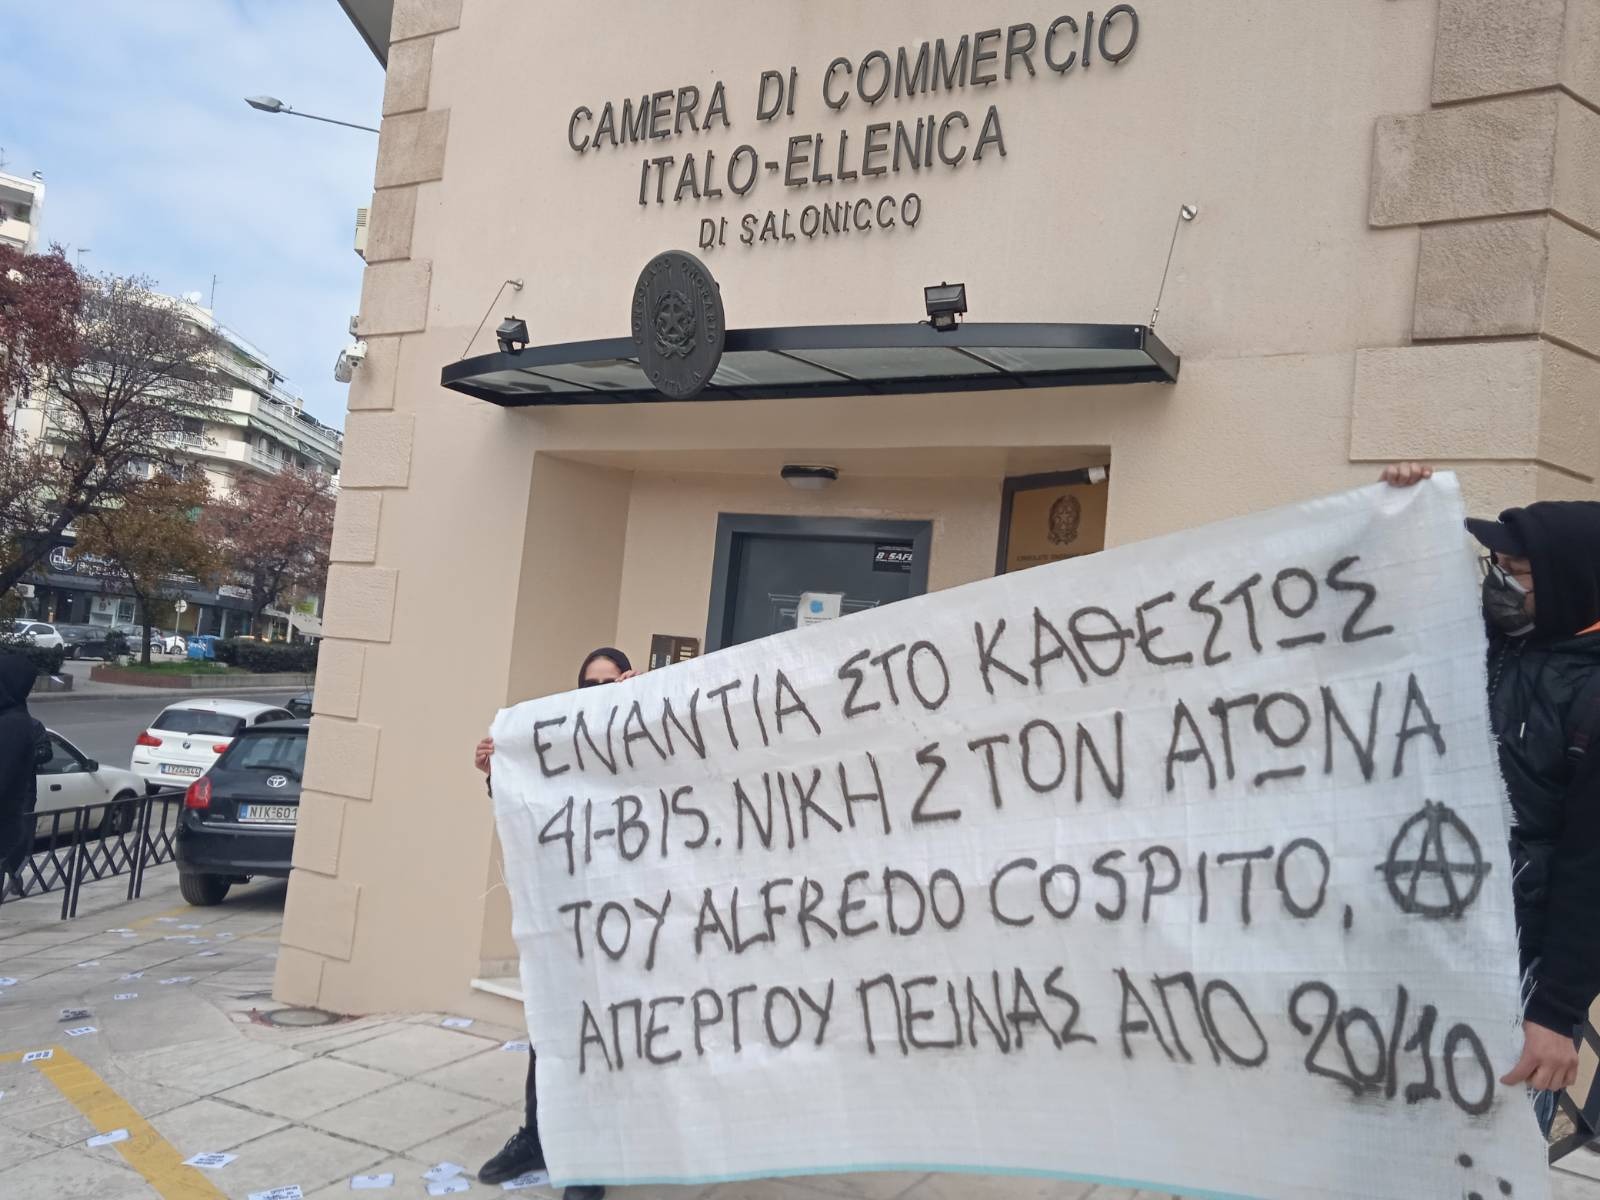 Παρέμβαση αλληλεγγύης στον Ιταλό αναρχικό κρατούμενο Alfredo Cospito